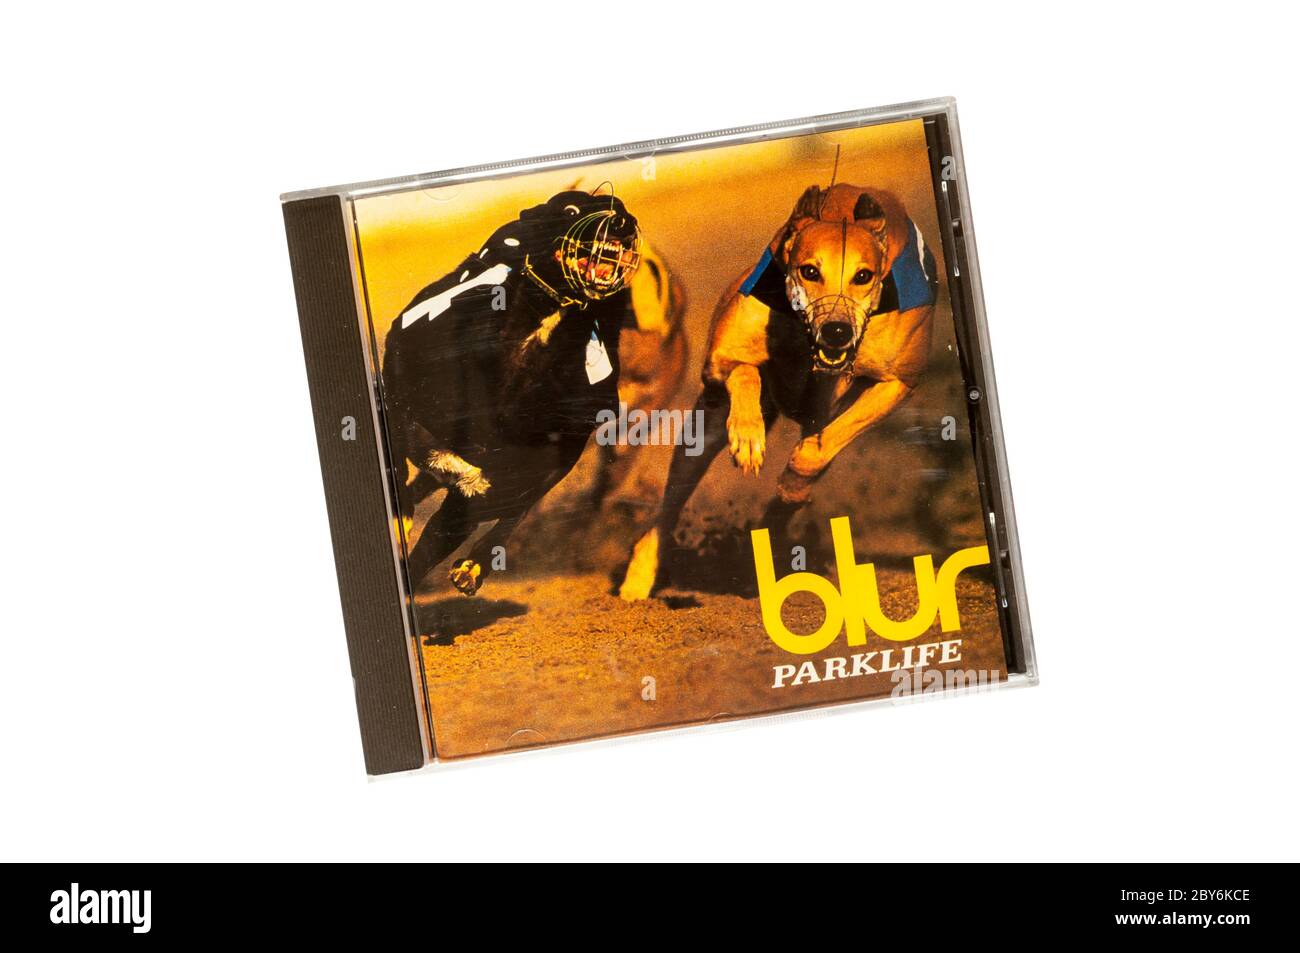 Parklife était le troisième album studio de Blur, le groupe de rock anglais. Publié en 1994. Banque D'Images